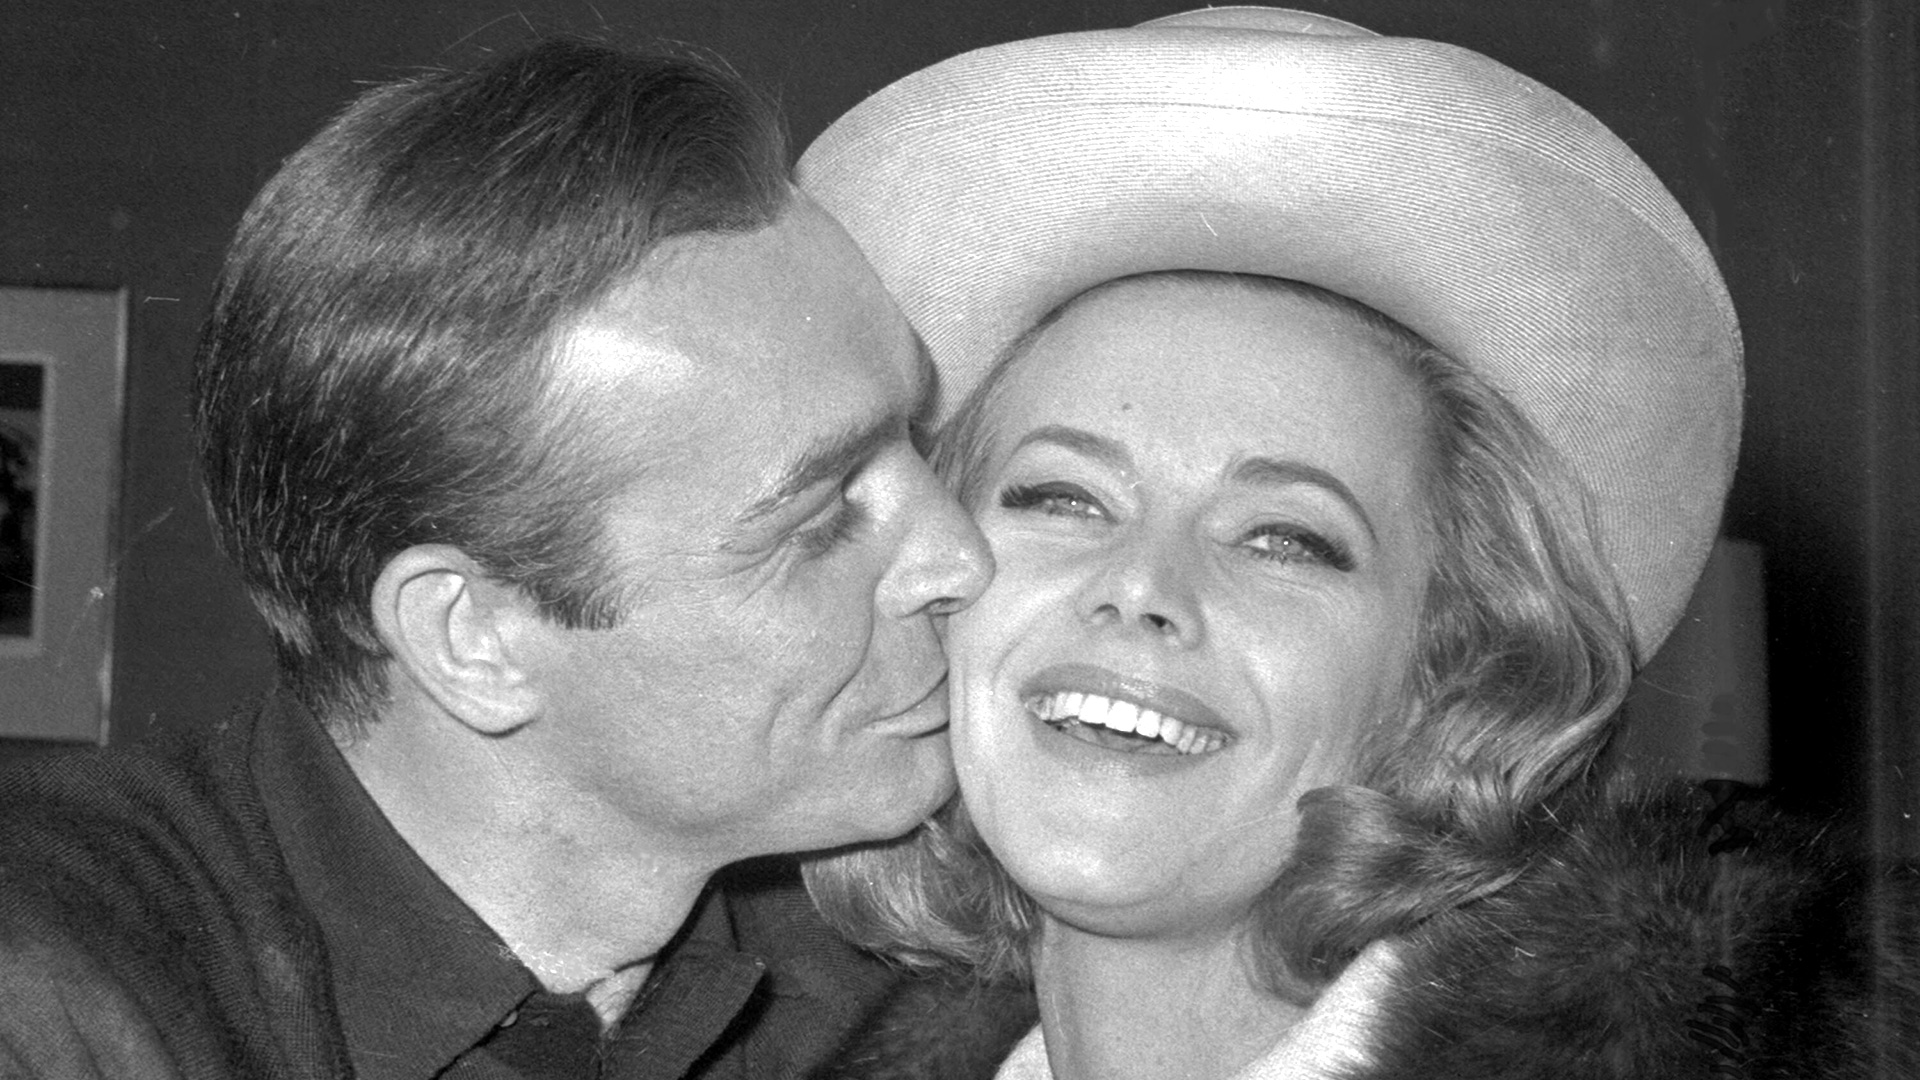 En esta foto de archivo del 25 de marzo de 1964, el actor británico Sean Connery besa a la actriz Honor Blackman durante una fiesta en los Estudios de Cine Pinewood, en Iver Heath, Inglaterra.